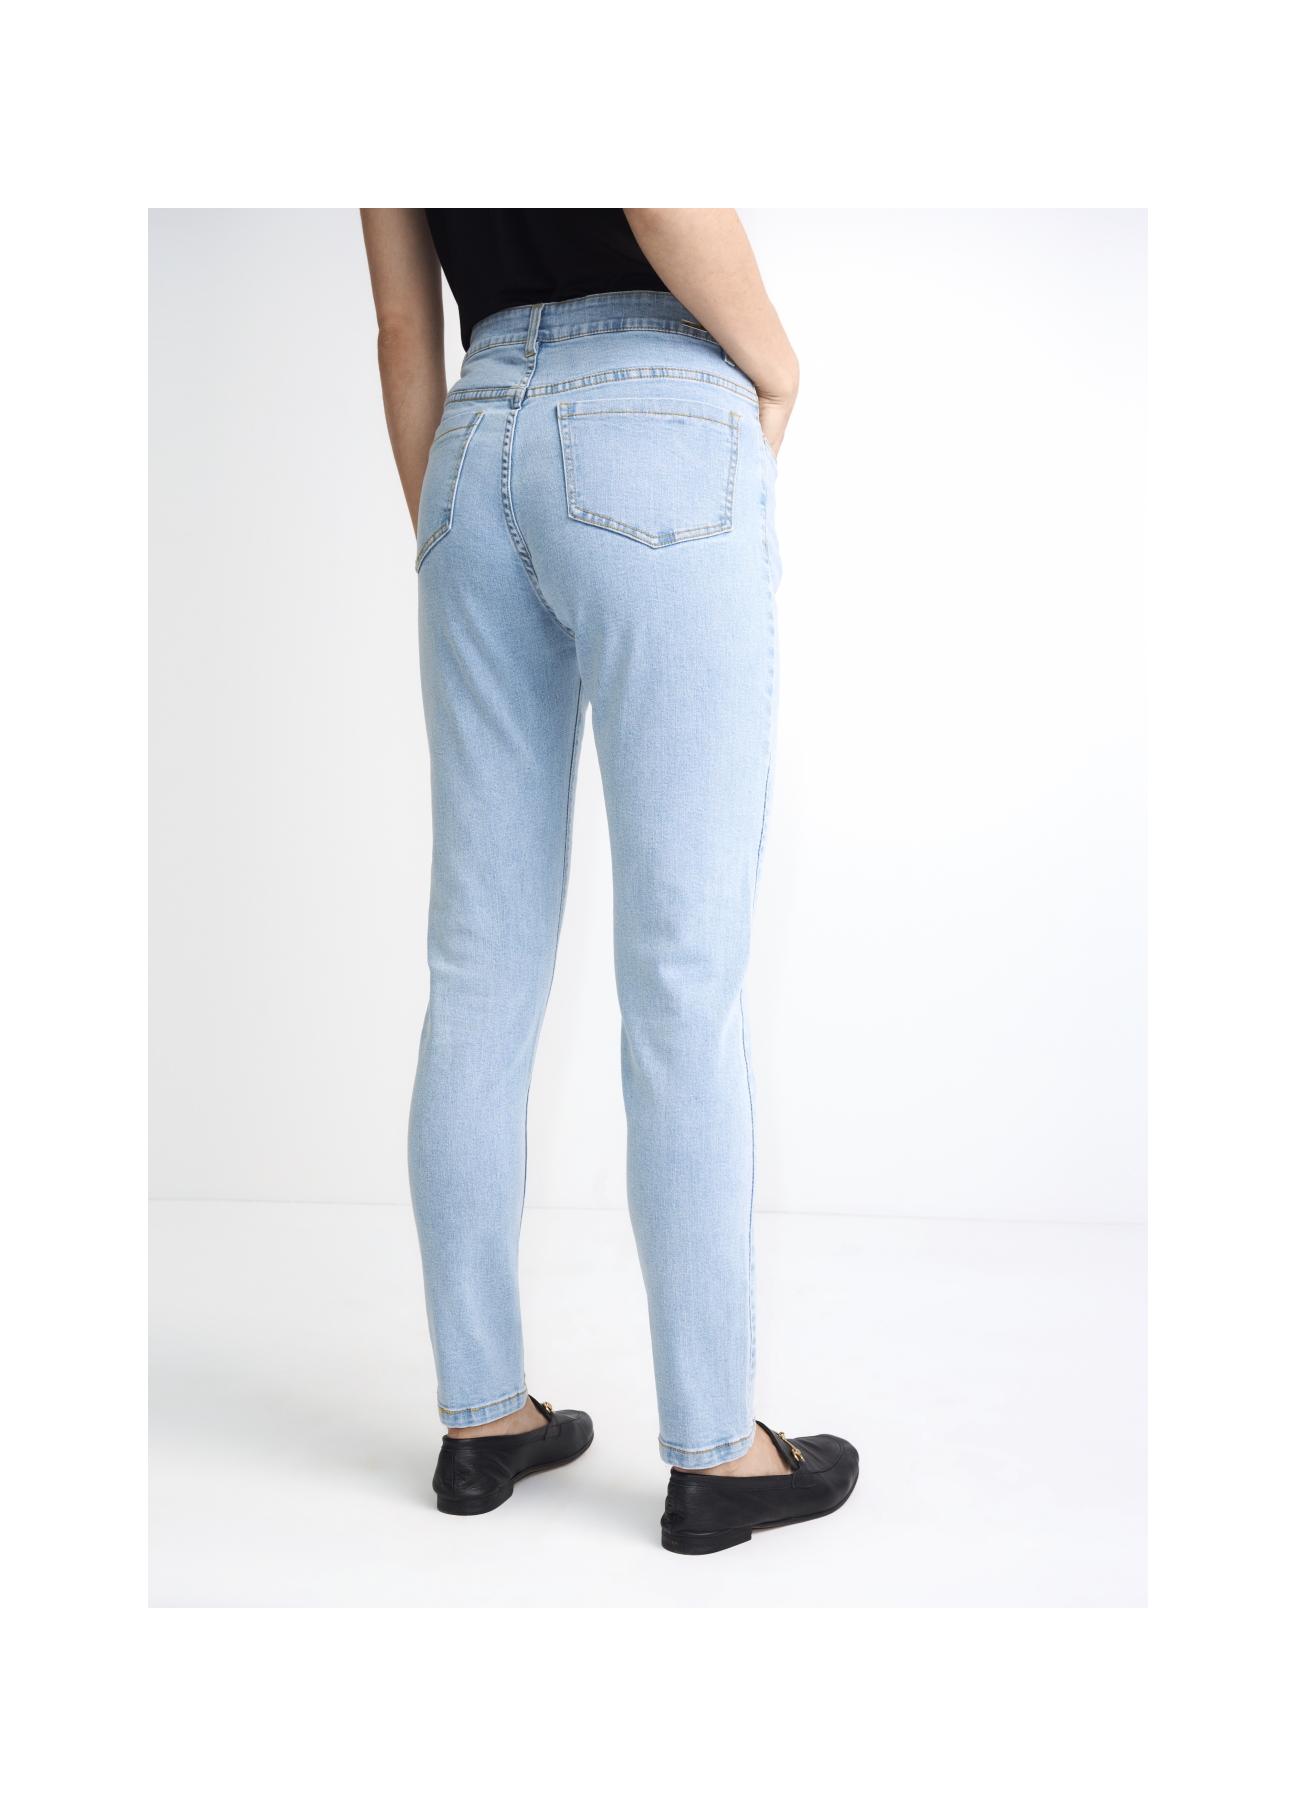 Jasne spodnie jeansowe damskie JEADT-0005-61(W22)